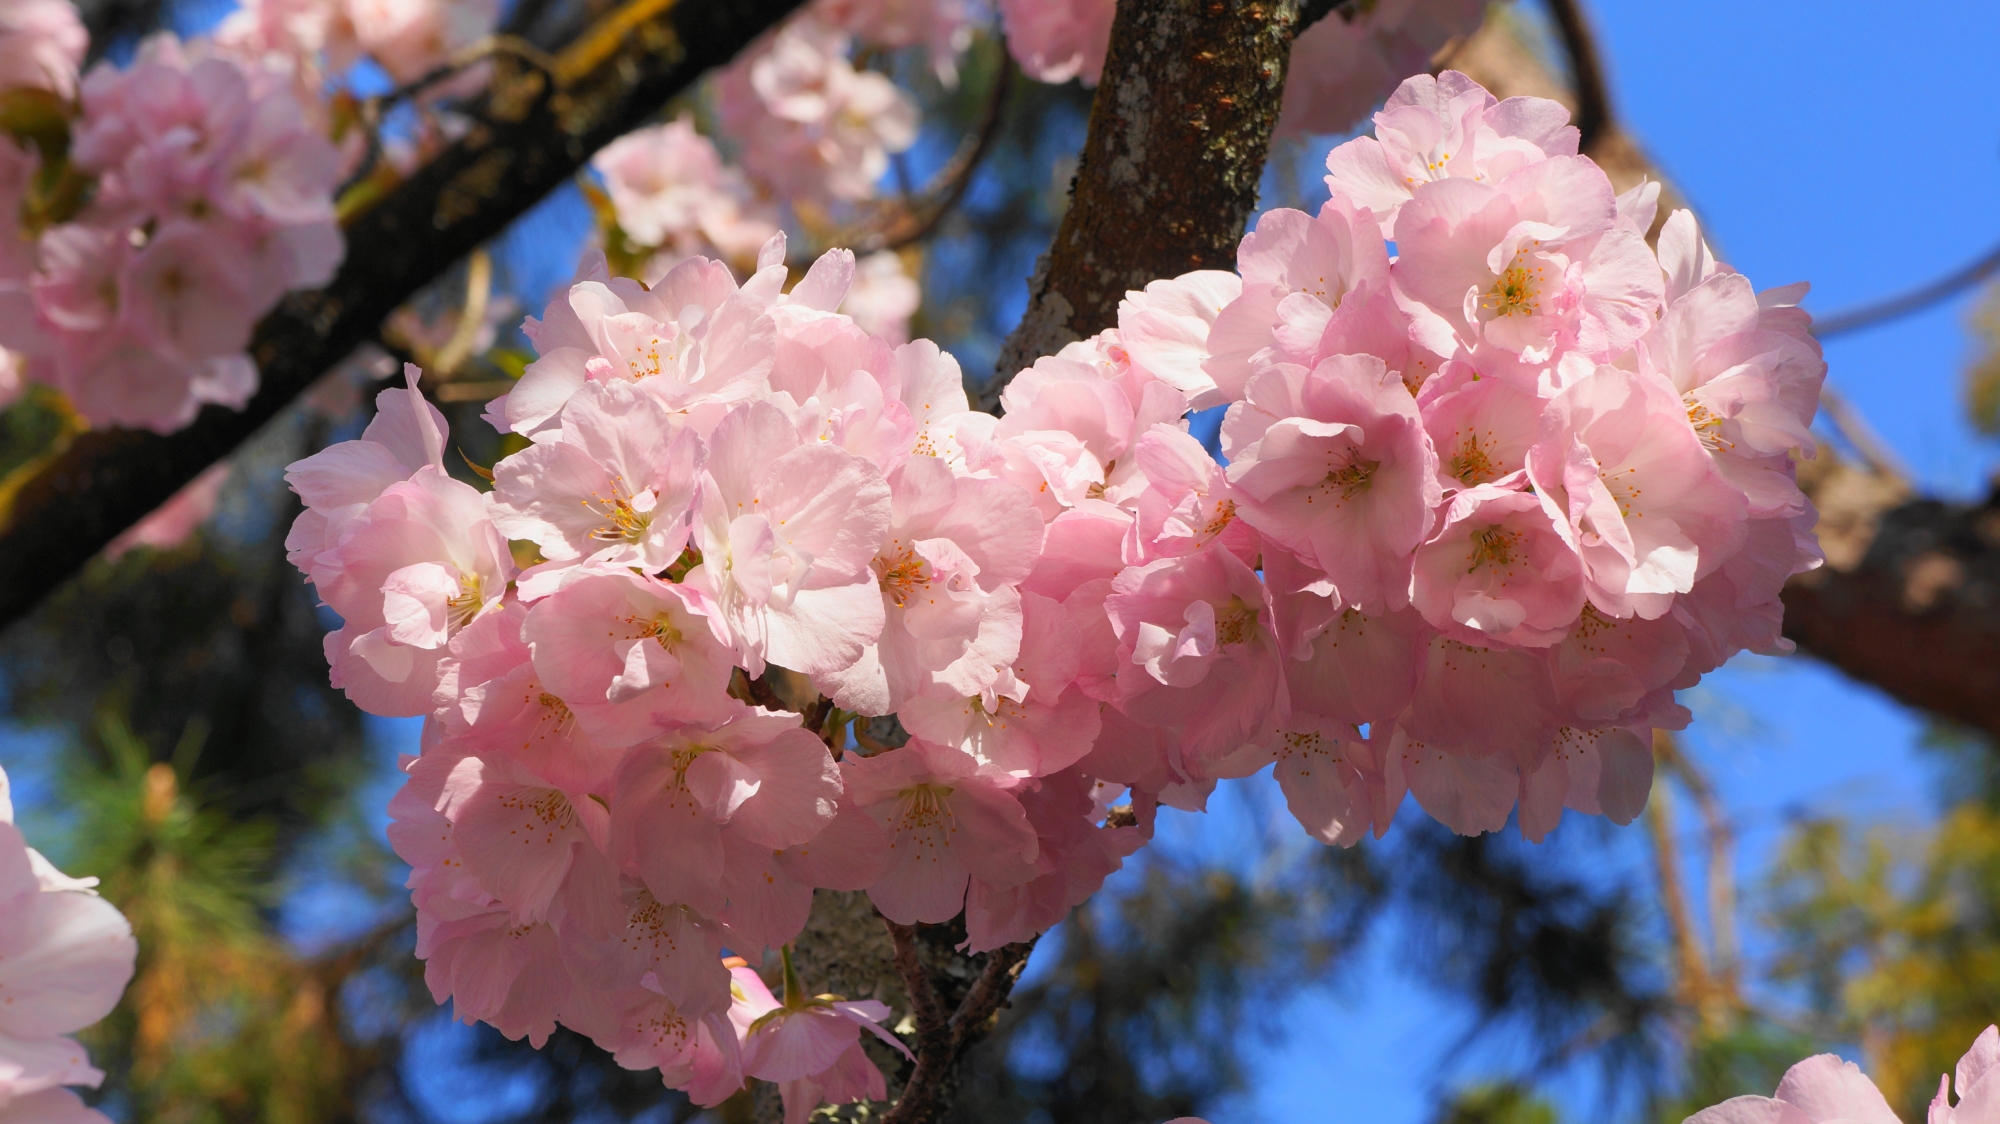 遠目から見ればコロンとした形の八重桜